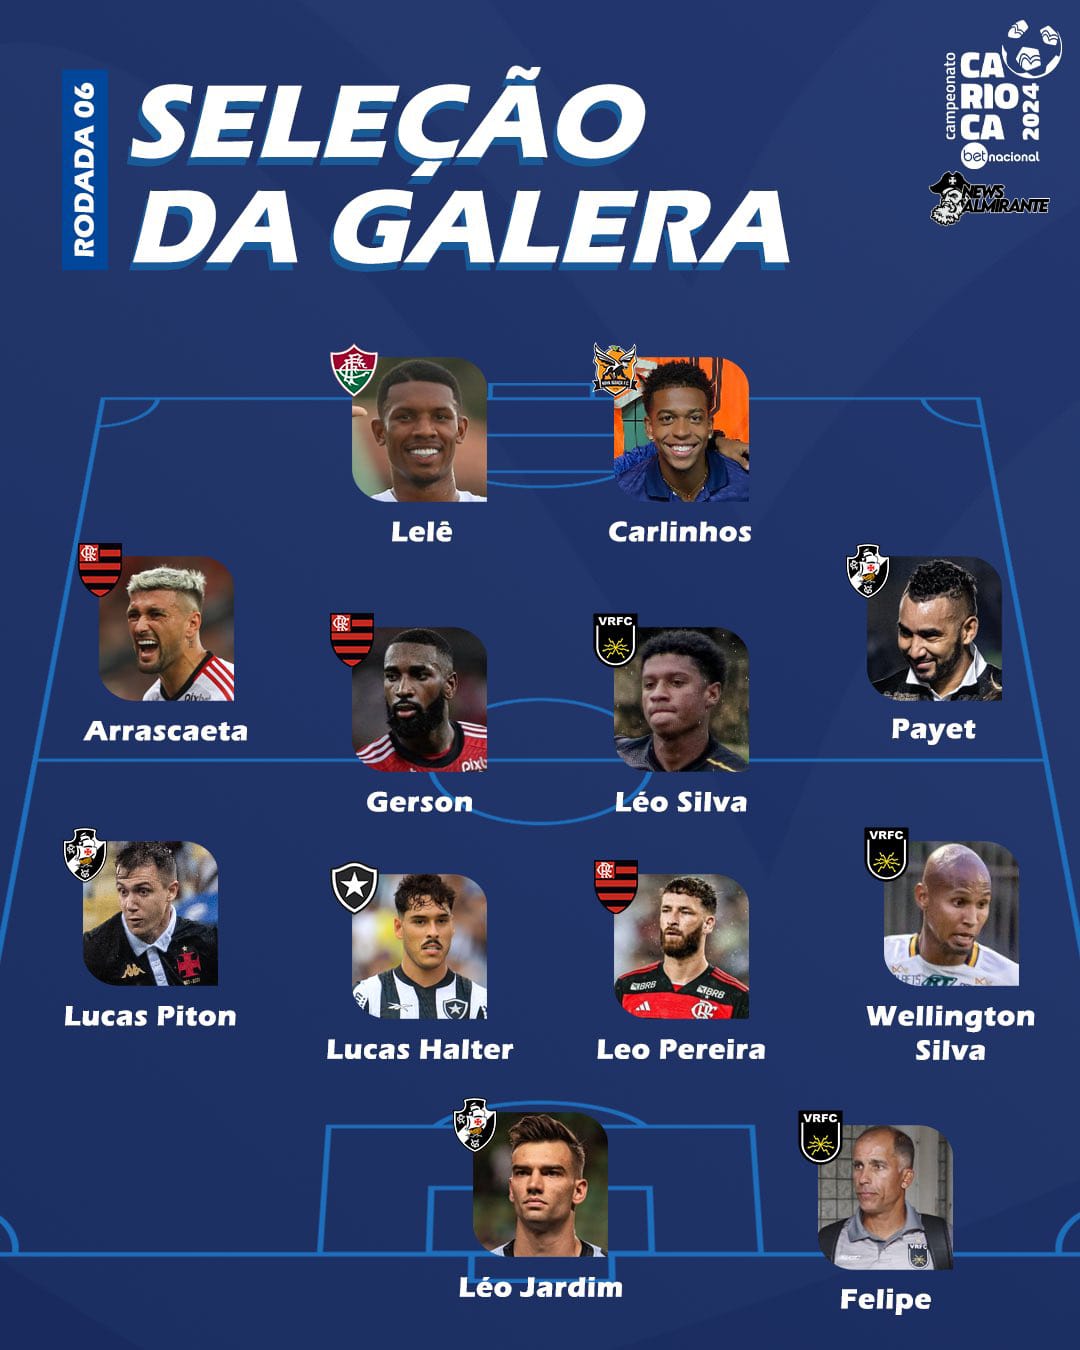 Léo Jardim, Piton e Payet são escolhidos para seleção da galera do Carioca, na sexta rodada. Arte: Cariocão/Instagram